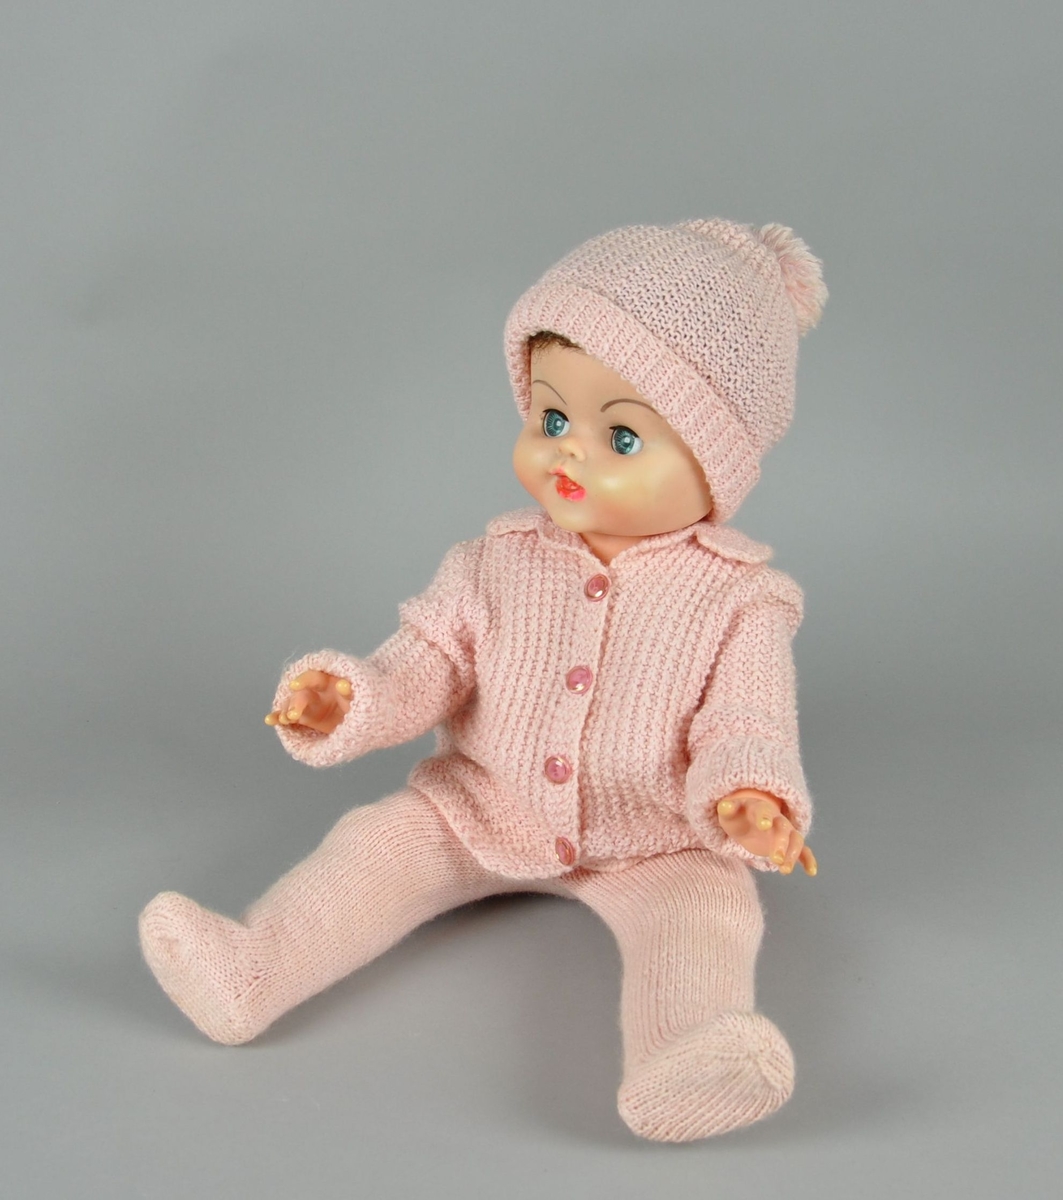 Dukke av plast. Dukken har bevegelige øyelokk og lemmer. Dukken er kledd med bukse, genser og lue av strikket, rosa tekstil. På genseren er det fire blake knapper, luen har en dusk.